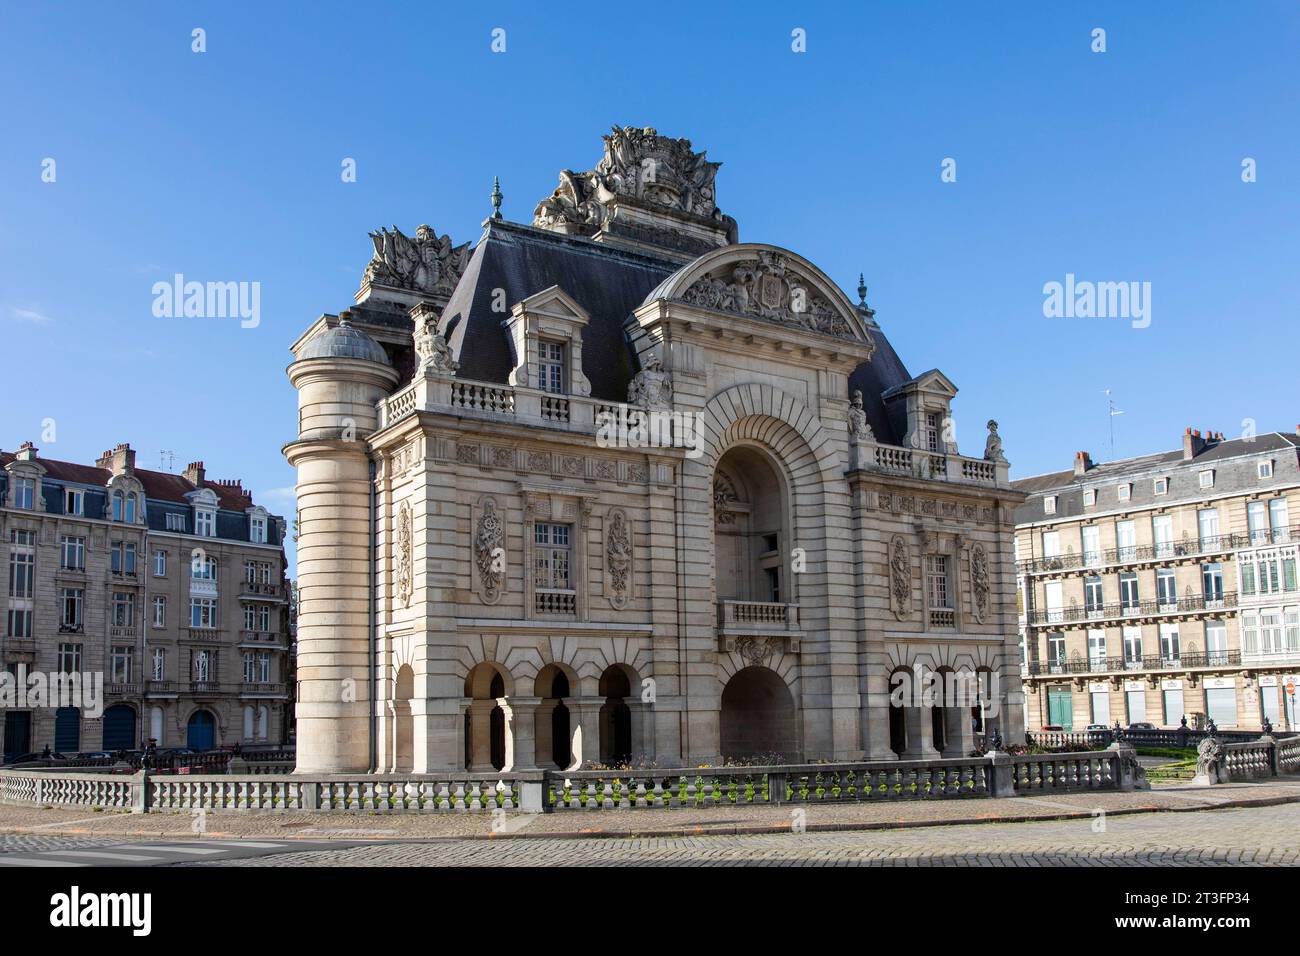 Frankreich, Nord, Lille, Paris Tor, am Ende des 17. Jahrhunderts wie ein Triumphbogen die Siege von Ludwig XIV. zu feiern. Stockfoto